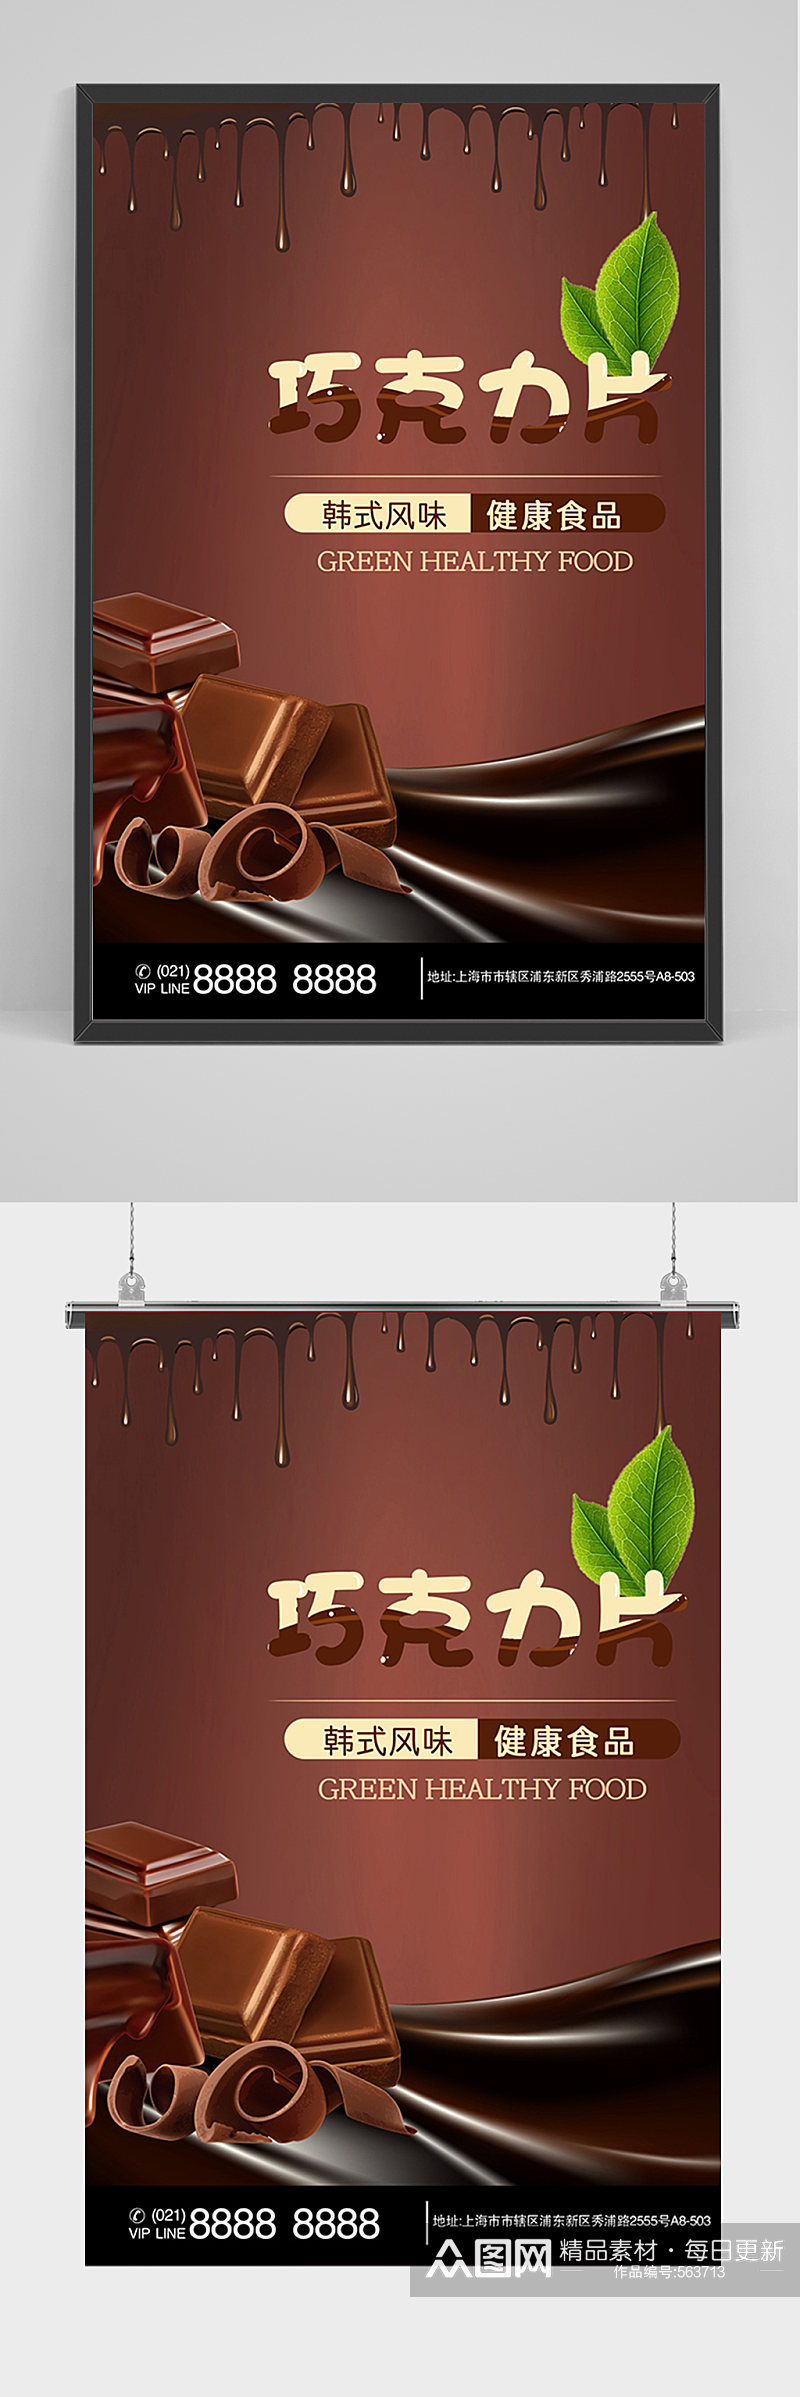 黑色巧克力片宣传海报素材